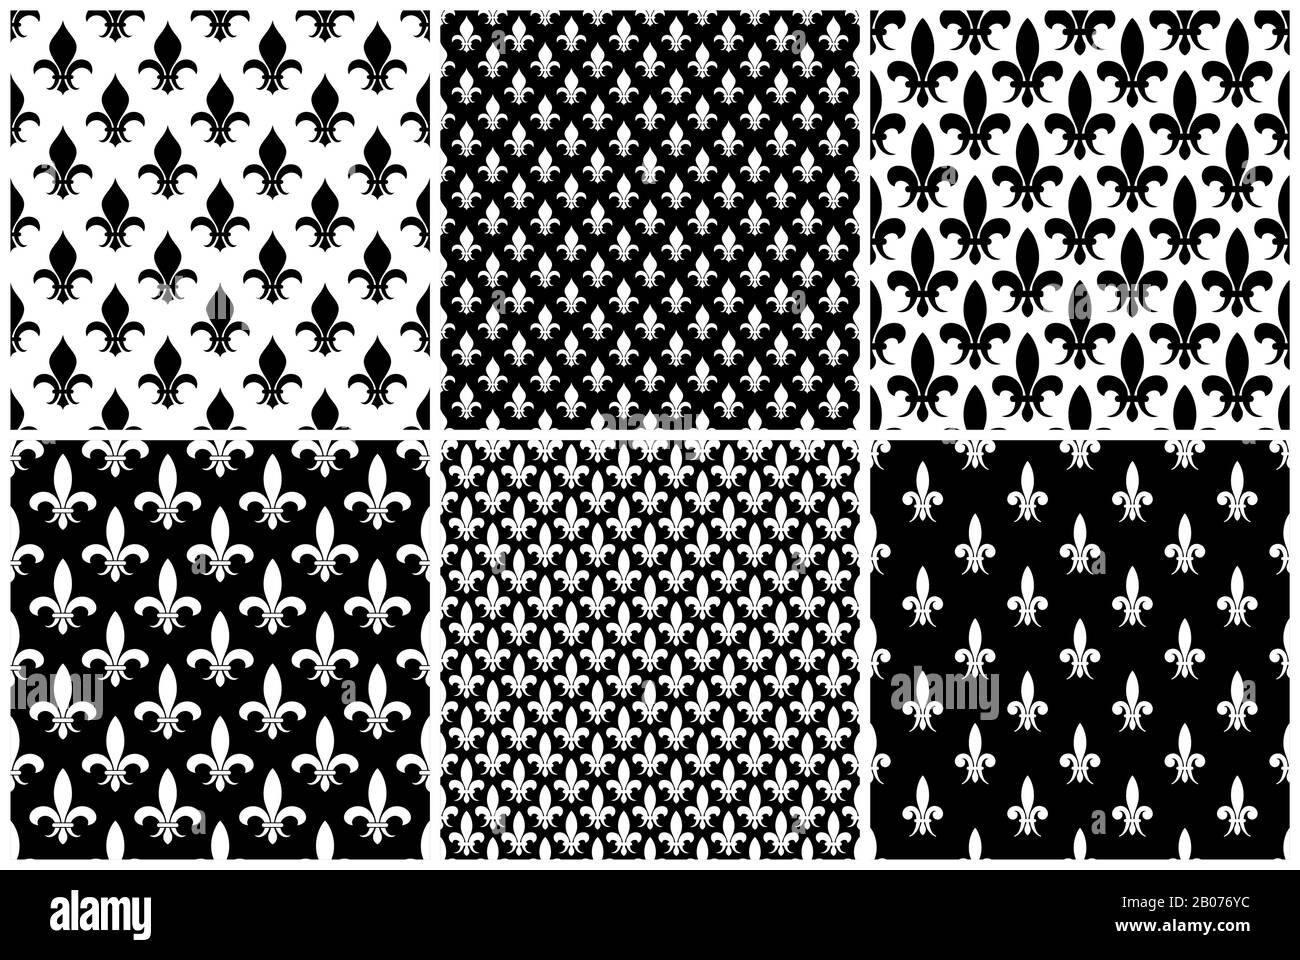 Vector fleur de LIS nahtlose Muster in schwarz-weißer Farbe. Abbildung: Hintergrundsammlung Stock Vektor